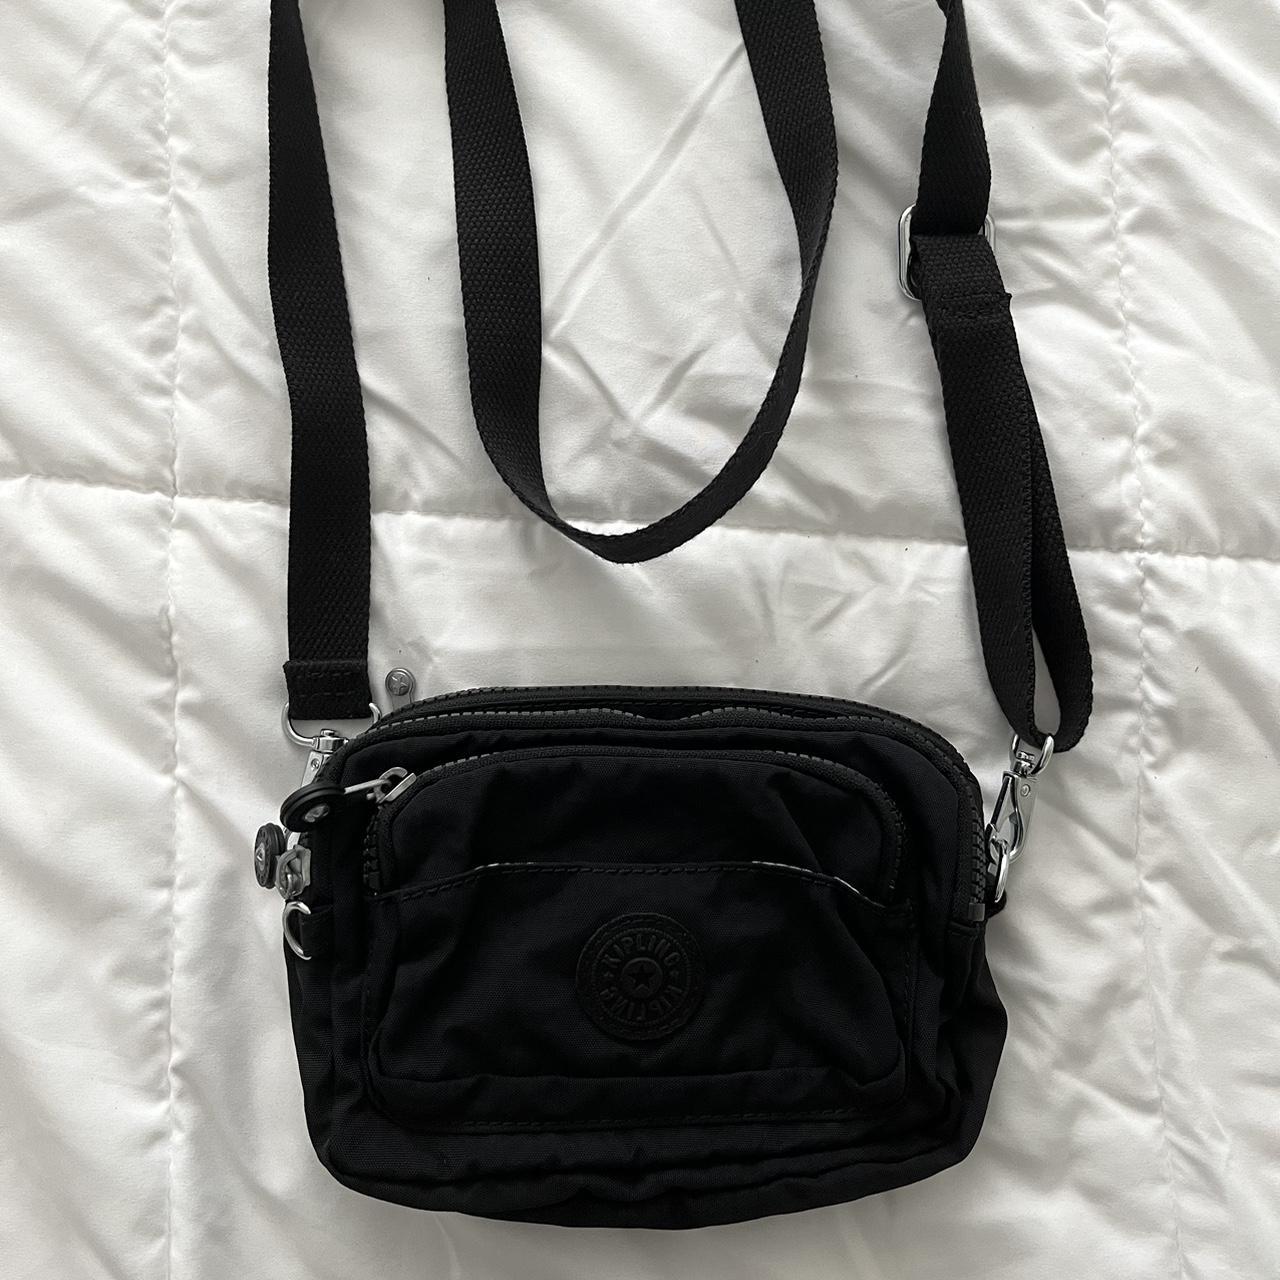 Kipling purse/fanny pack - Depop